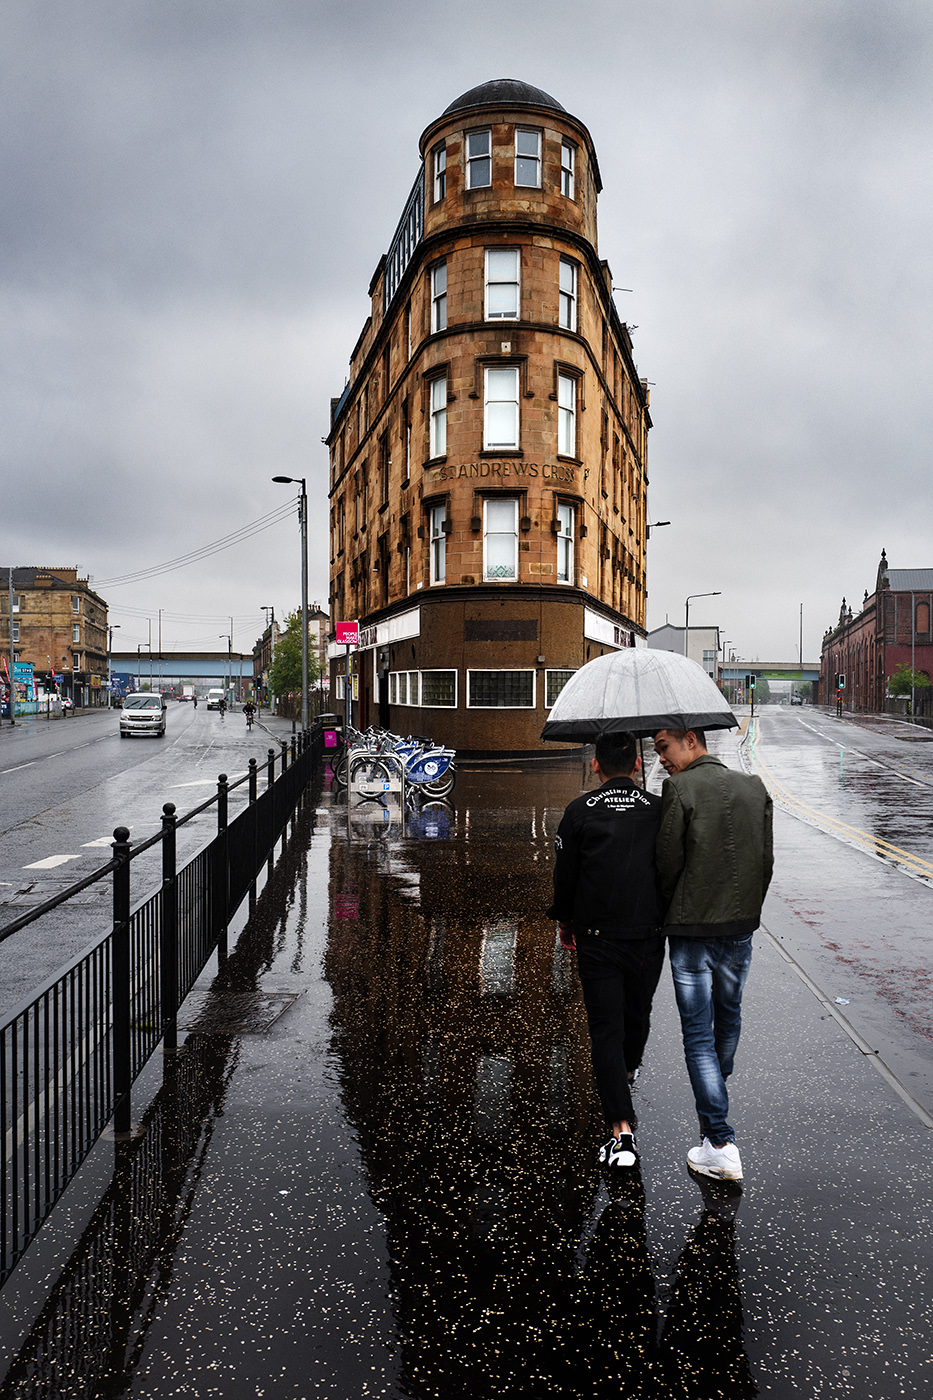 Glasgow by A Flannigan ARPS